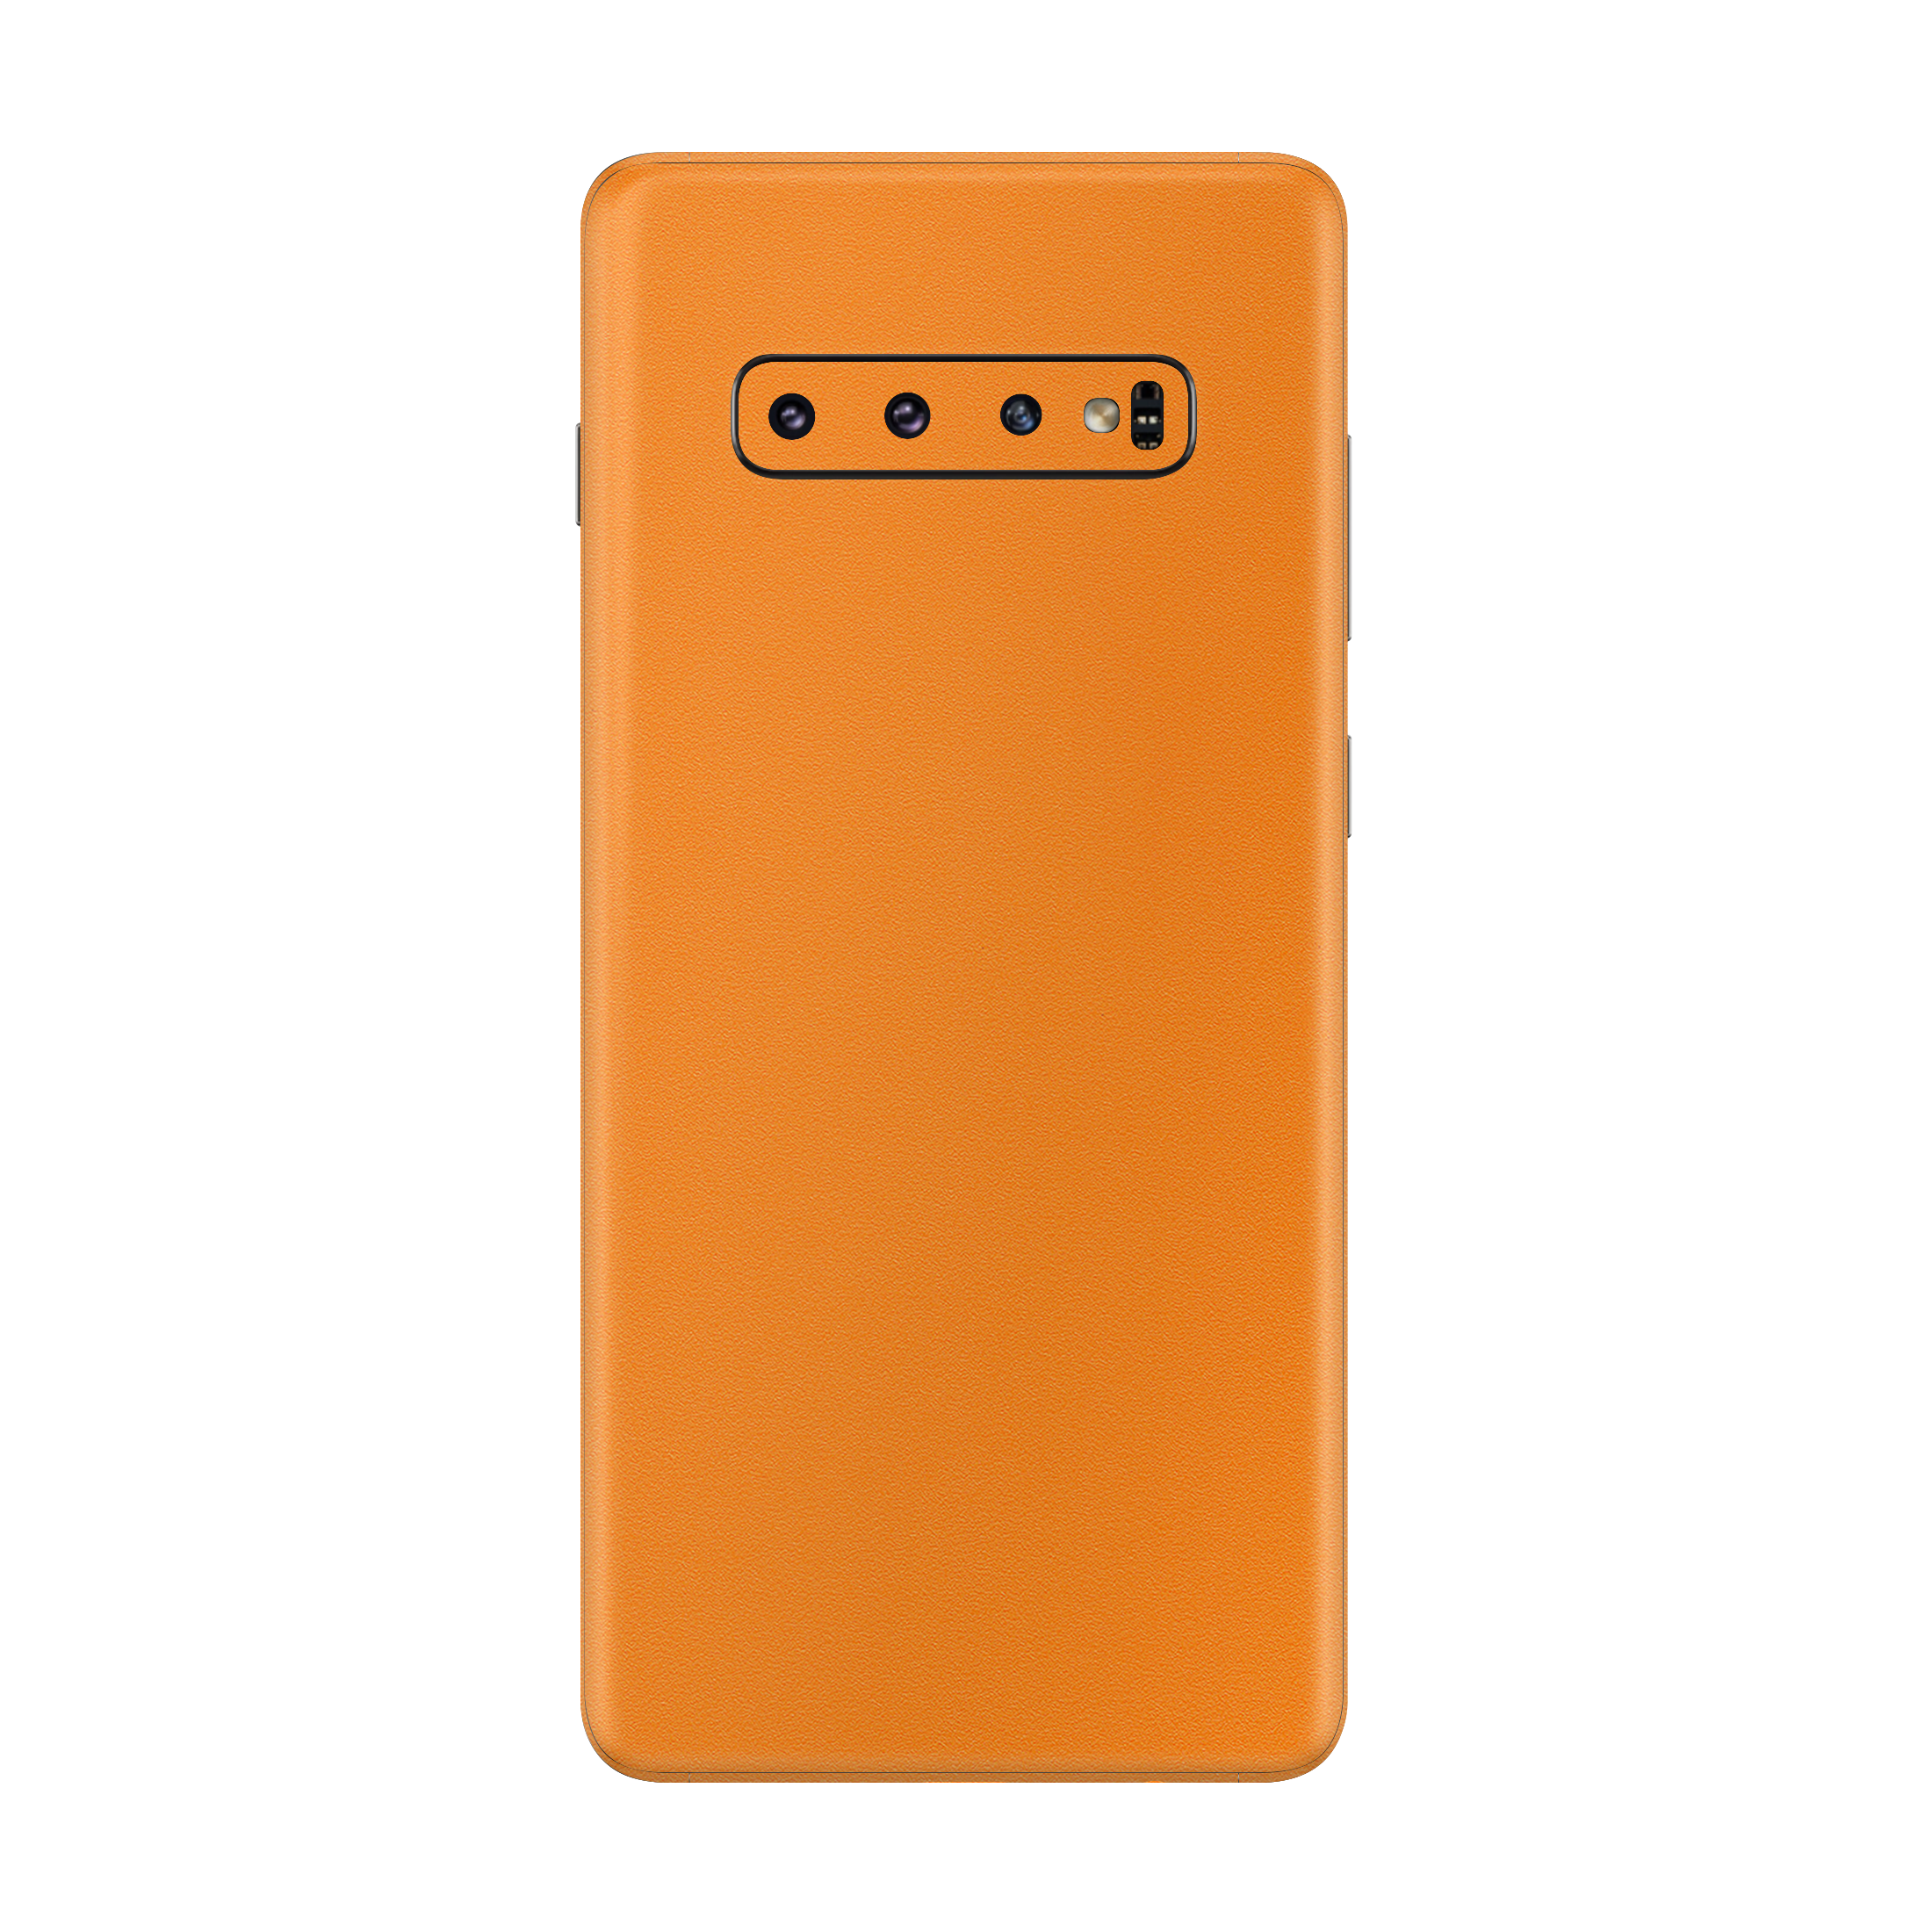 Dot Orange Skin for Samsung S10 Plus